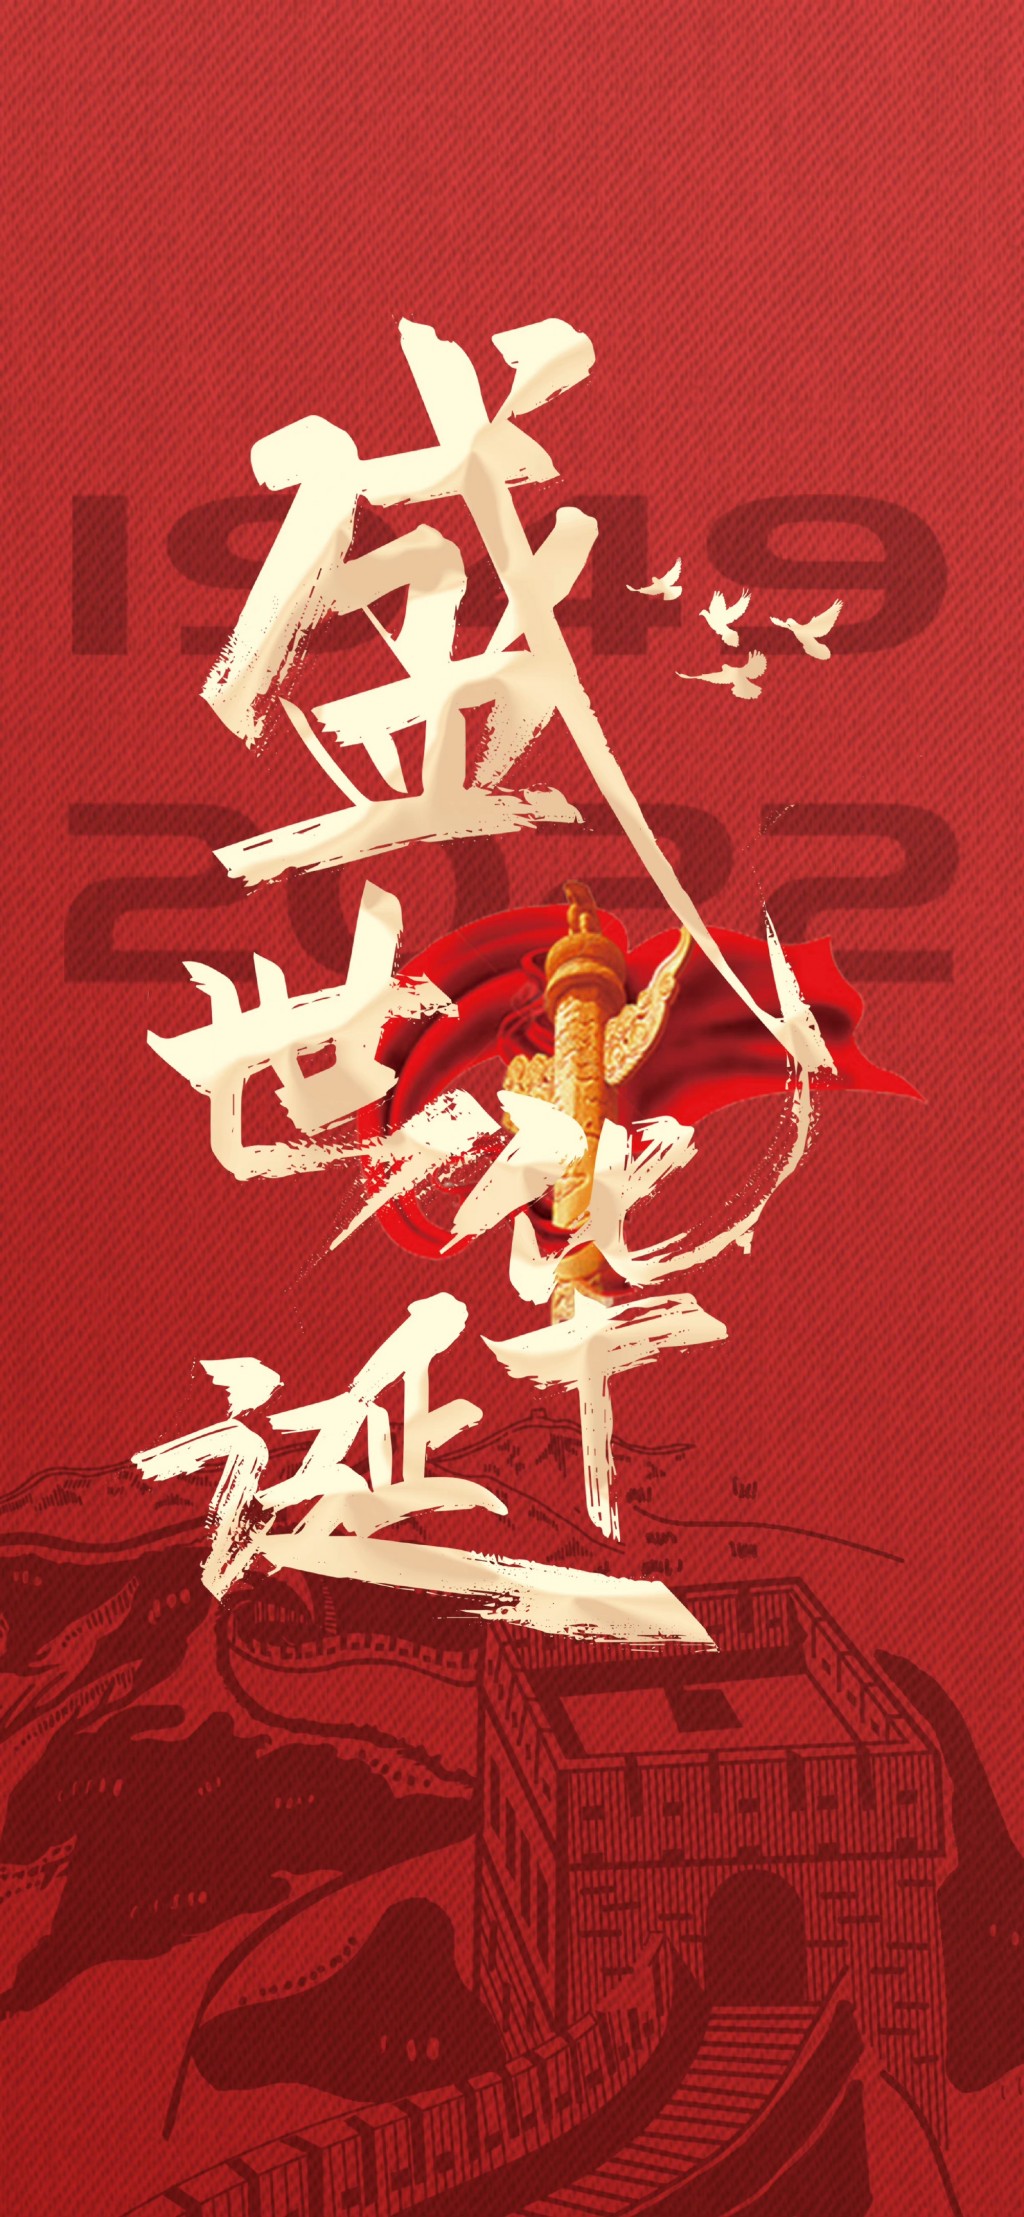 国庆节祝福祖国73周年盛世华诞超清手机壁纸